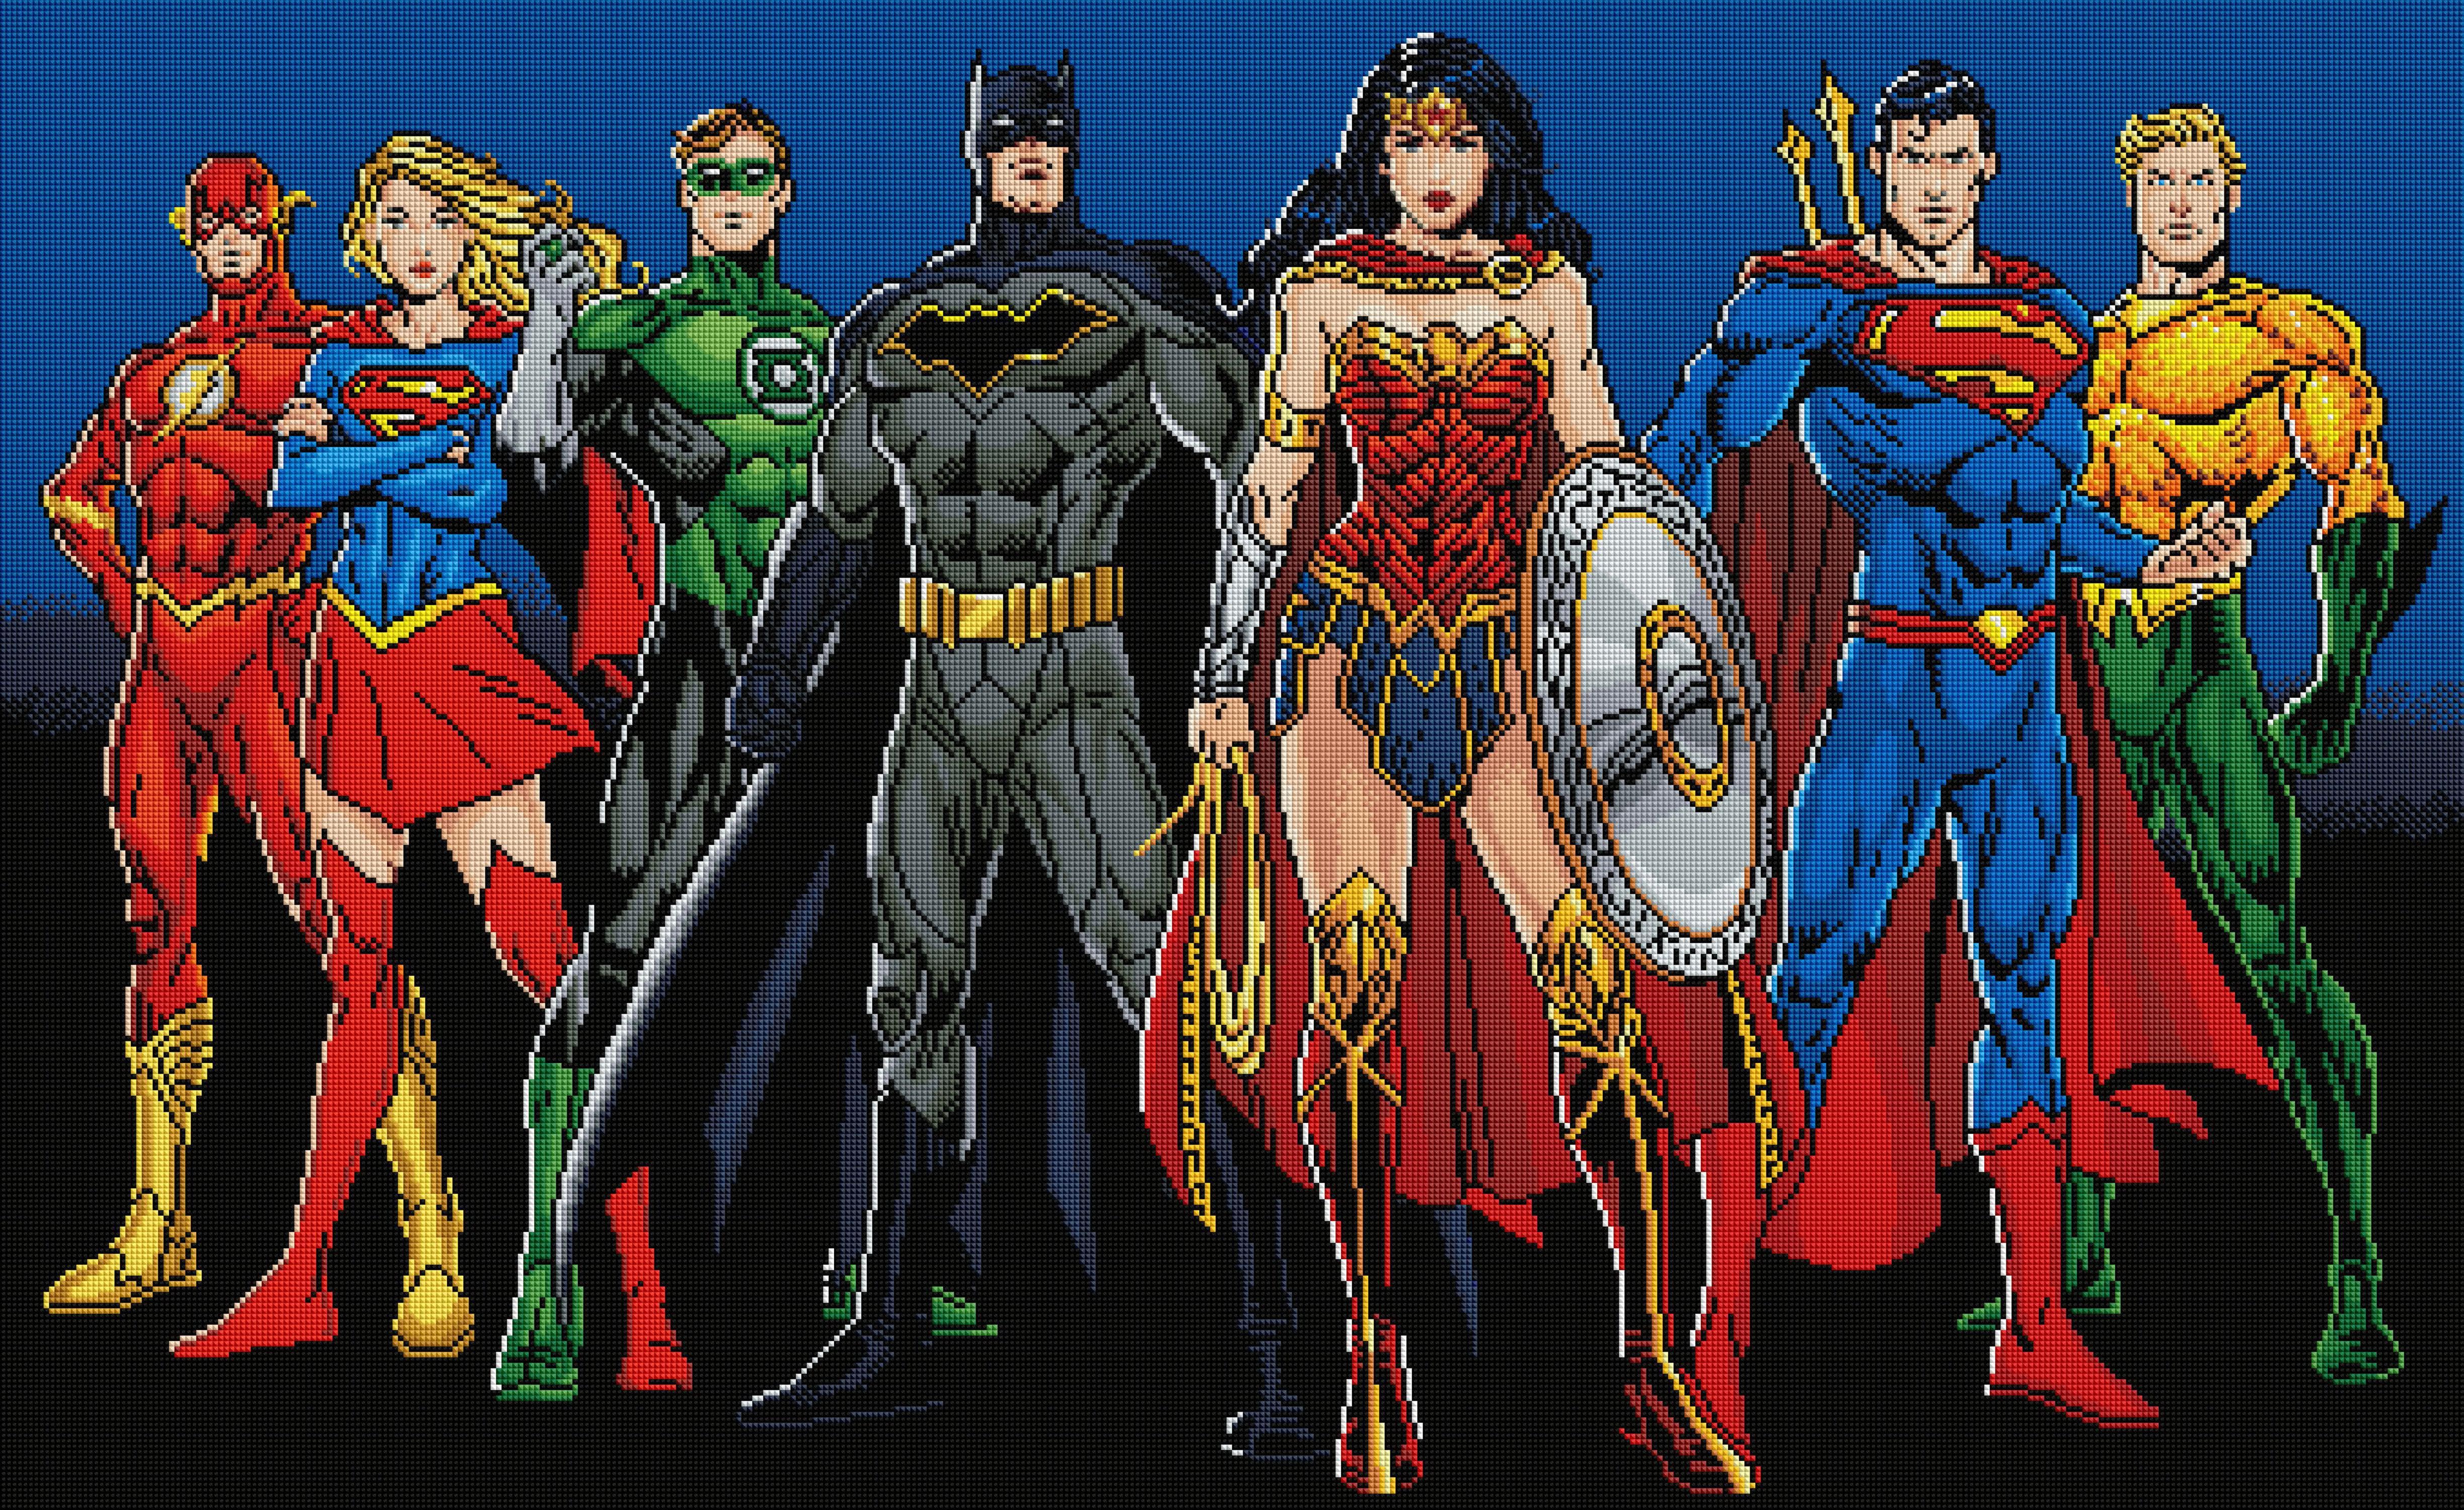 justice league costume